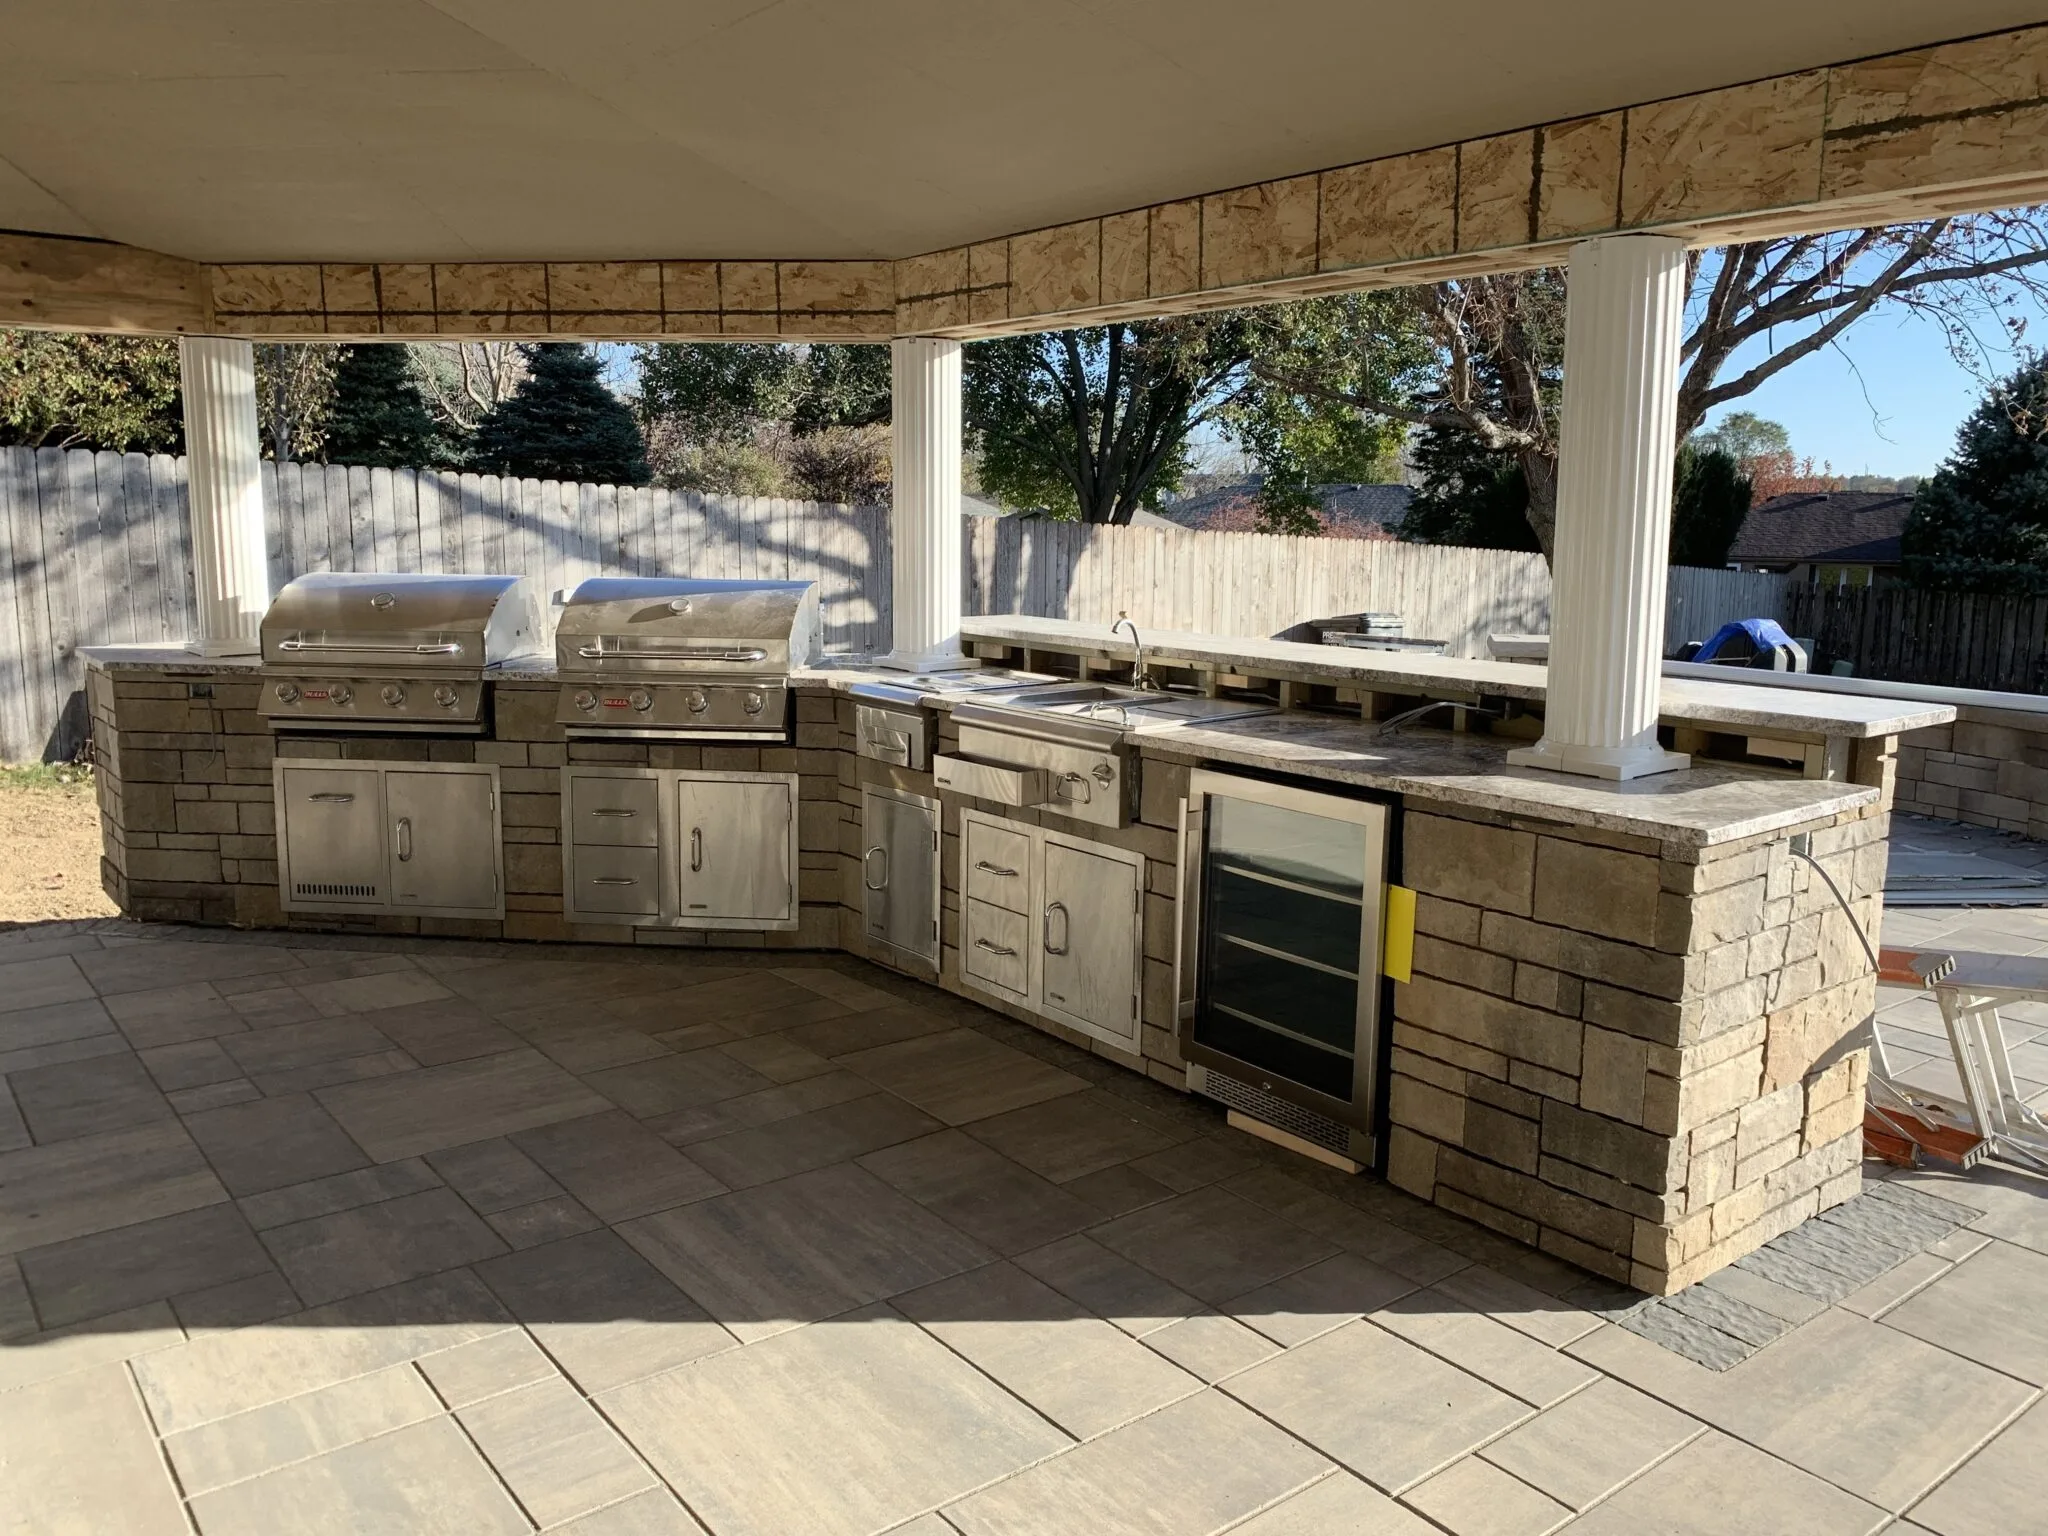 Outdoor kitchen installed.